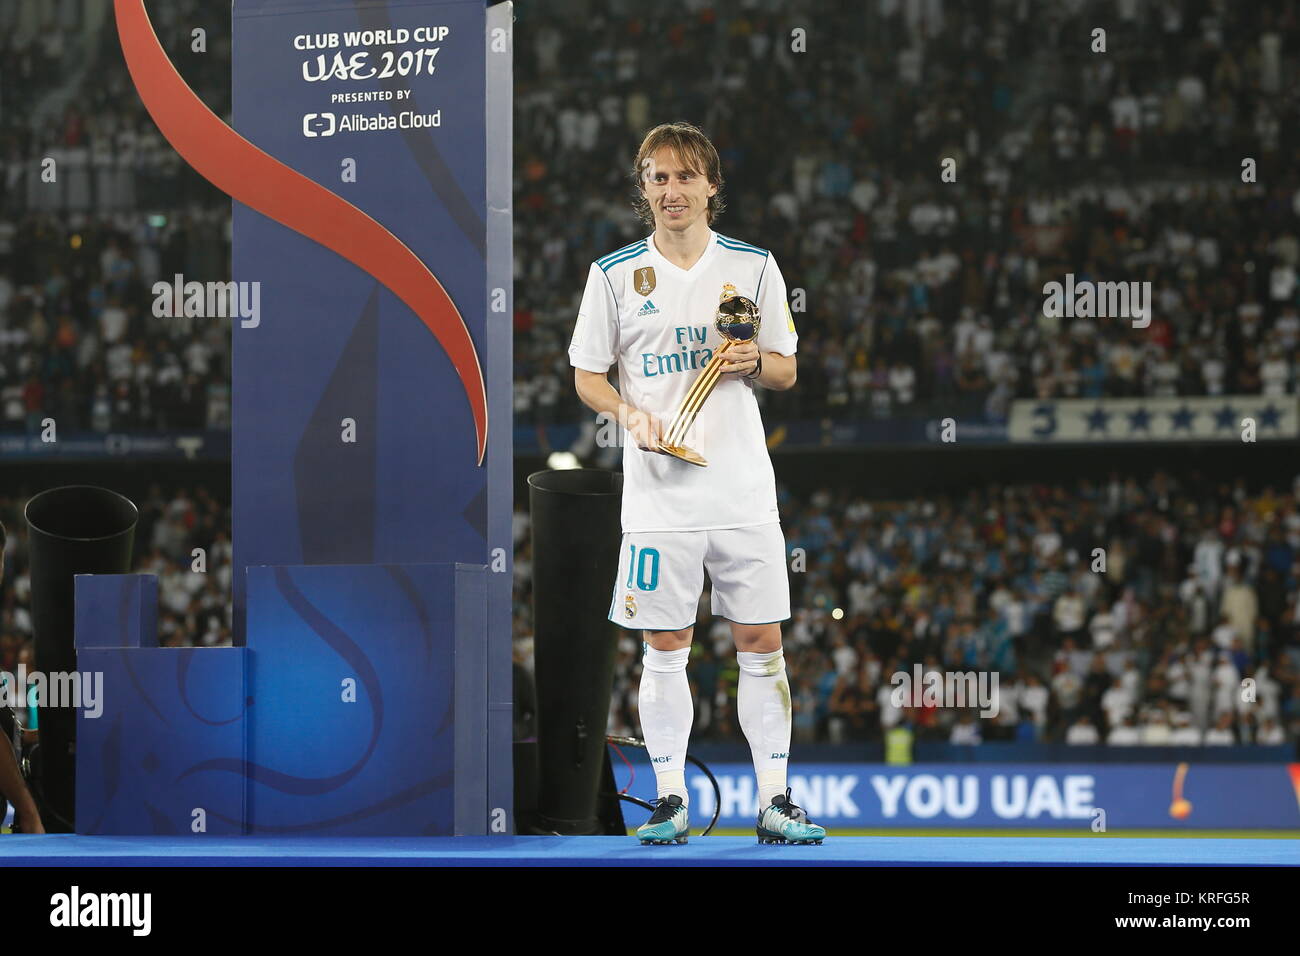 templo Cien años tímido Abu Dhabi, Emiratos Árabes Unidos. 16 dic, 2017. Luka Modric (Real) fútbol/ Soccer : Modric recibe Balón de Oro de adidas durante la ceremonia de  entrega de premios de la Copa Mundial de